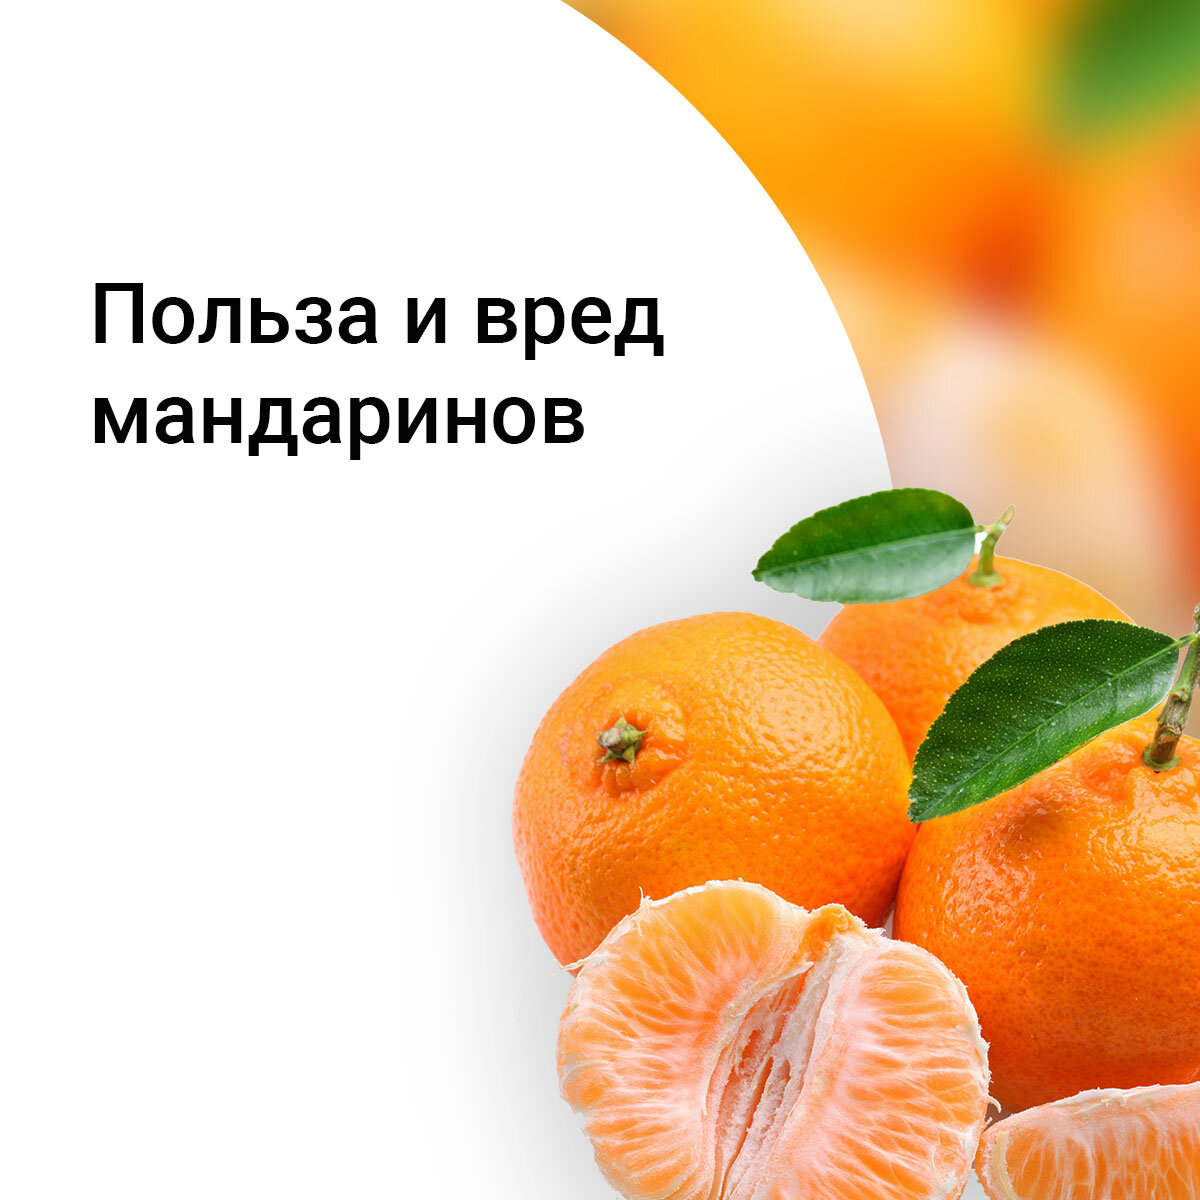 Мандарины польза и вред для здоровья. Чем полезны мандарины. Польза мандаринов для организма. Мандариновая шкурка.